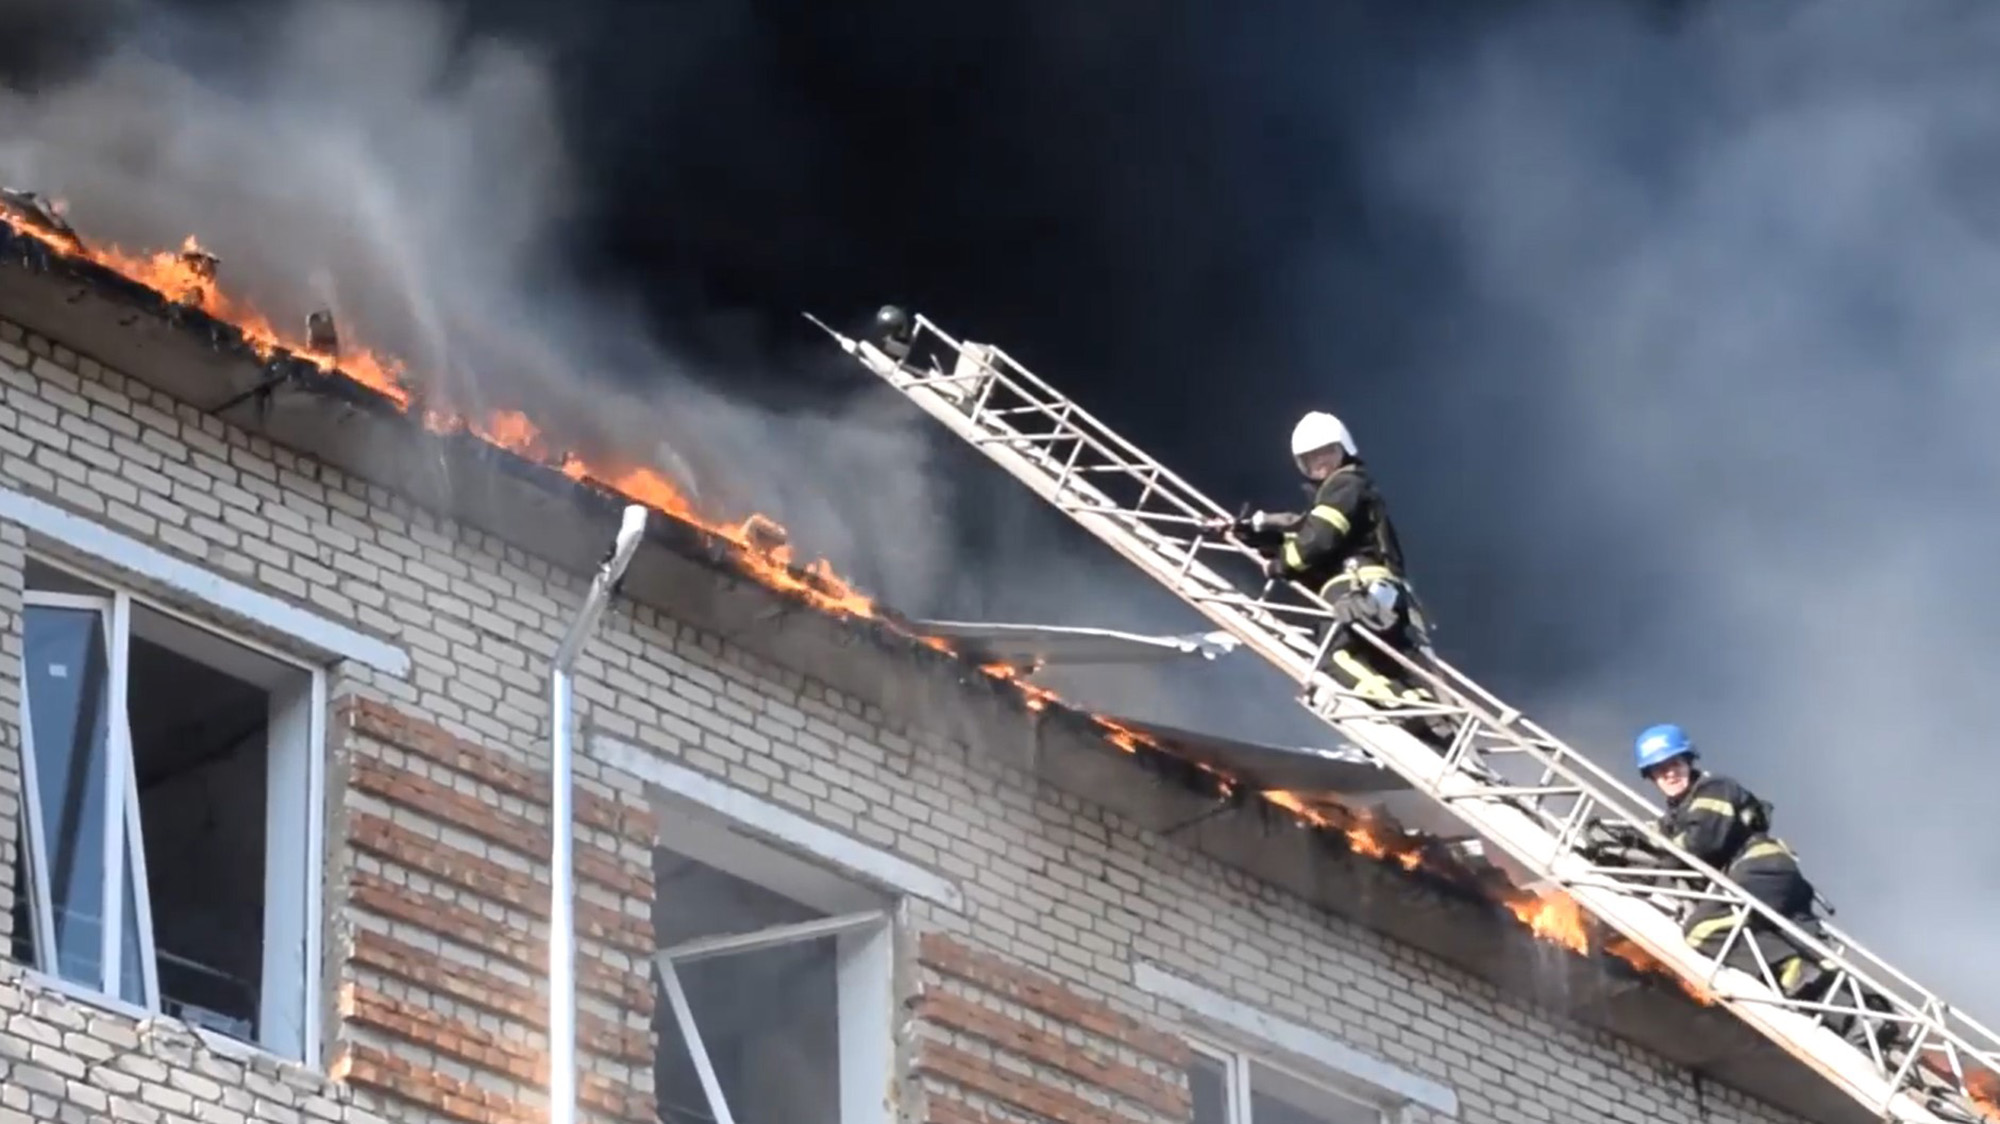 Firefighters battle a blaze following a missile strike on a building in Mykolaiv, Ukraine on July 5.